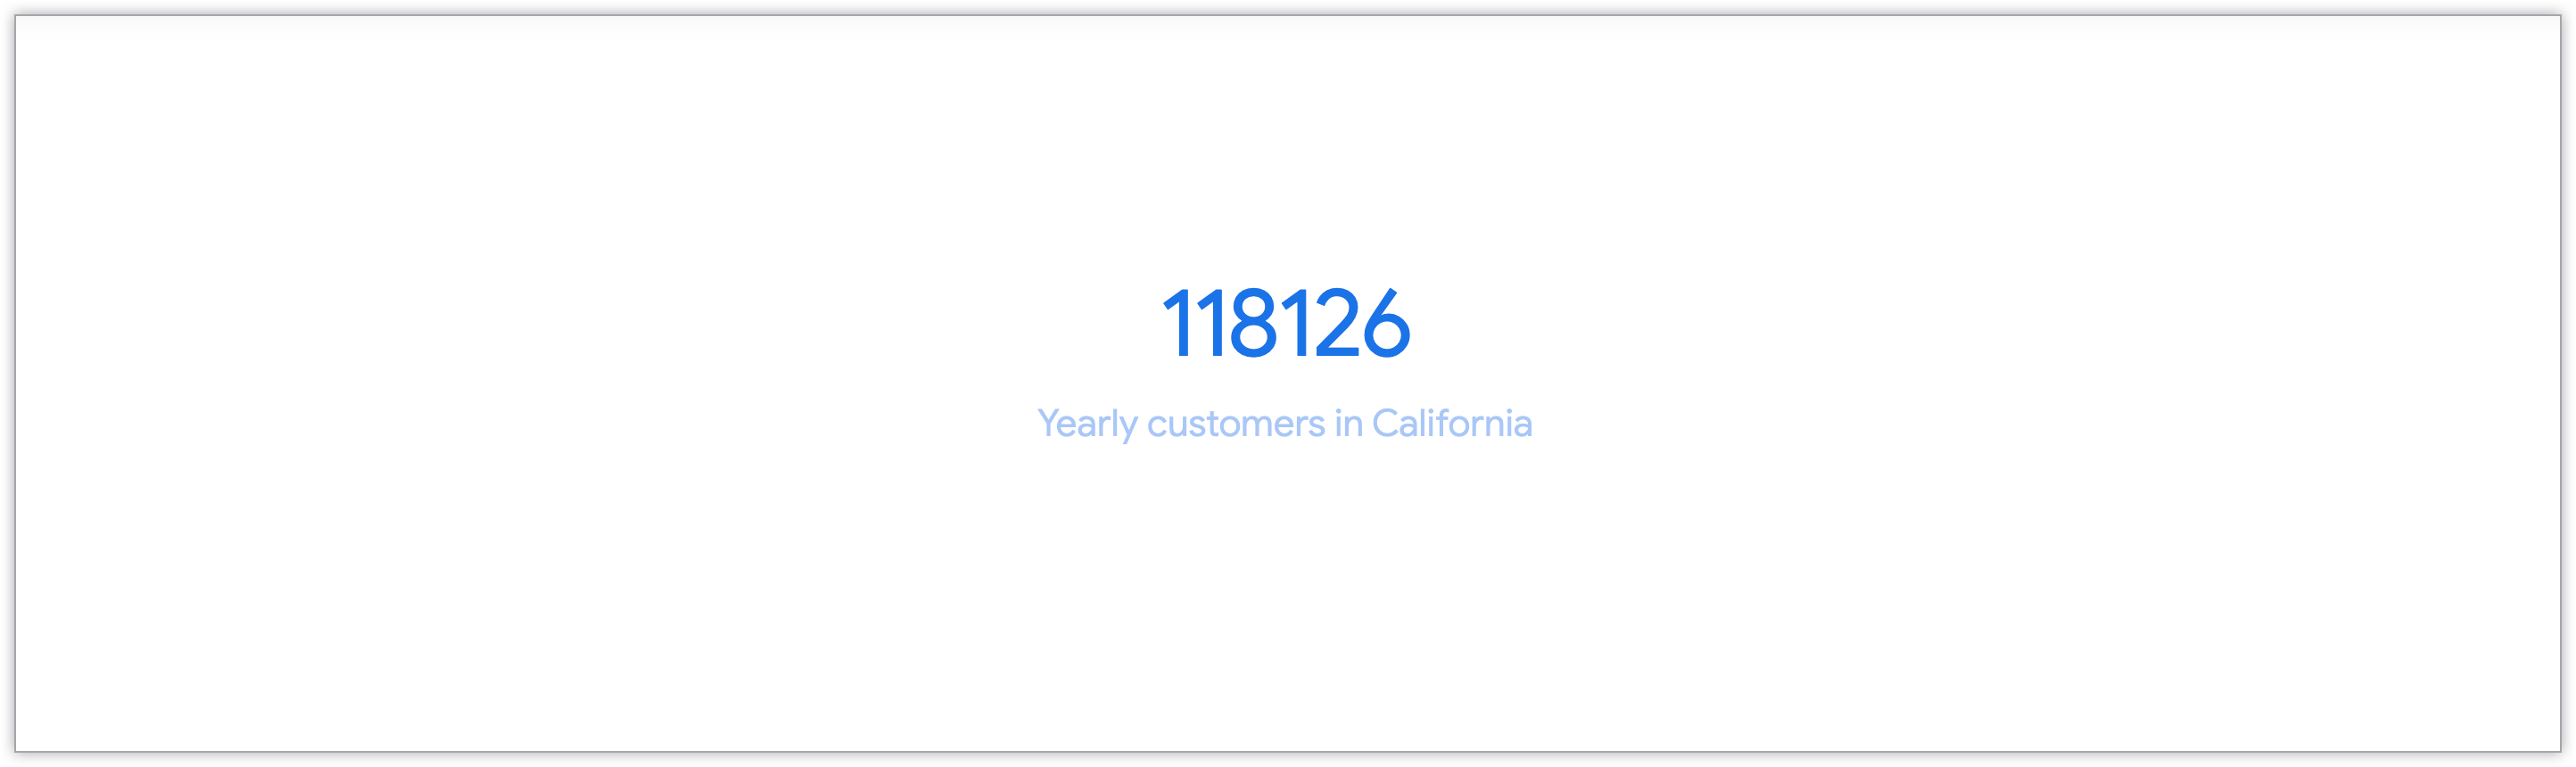 캘리포니아의 연간 고객 수를 보여주는 단일 값 차트